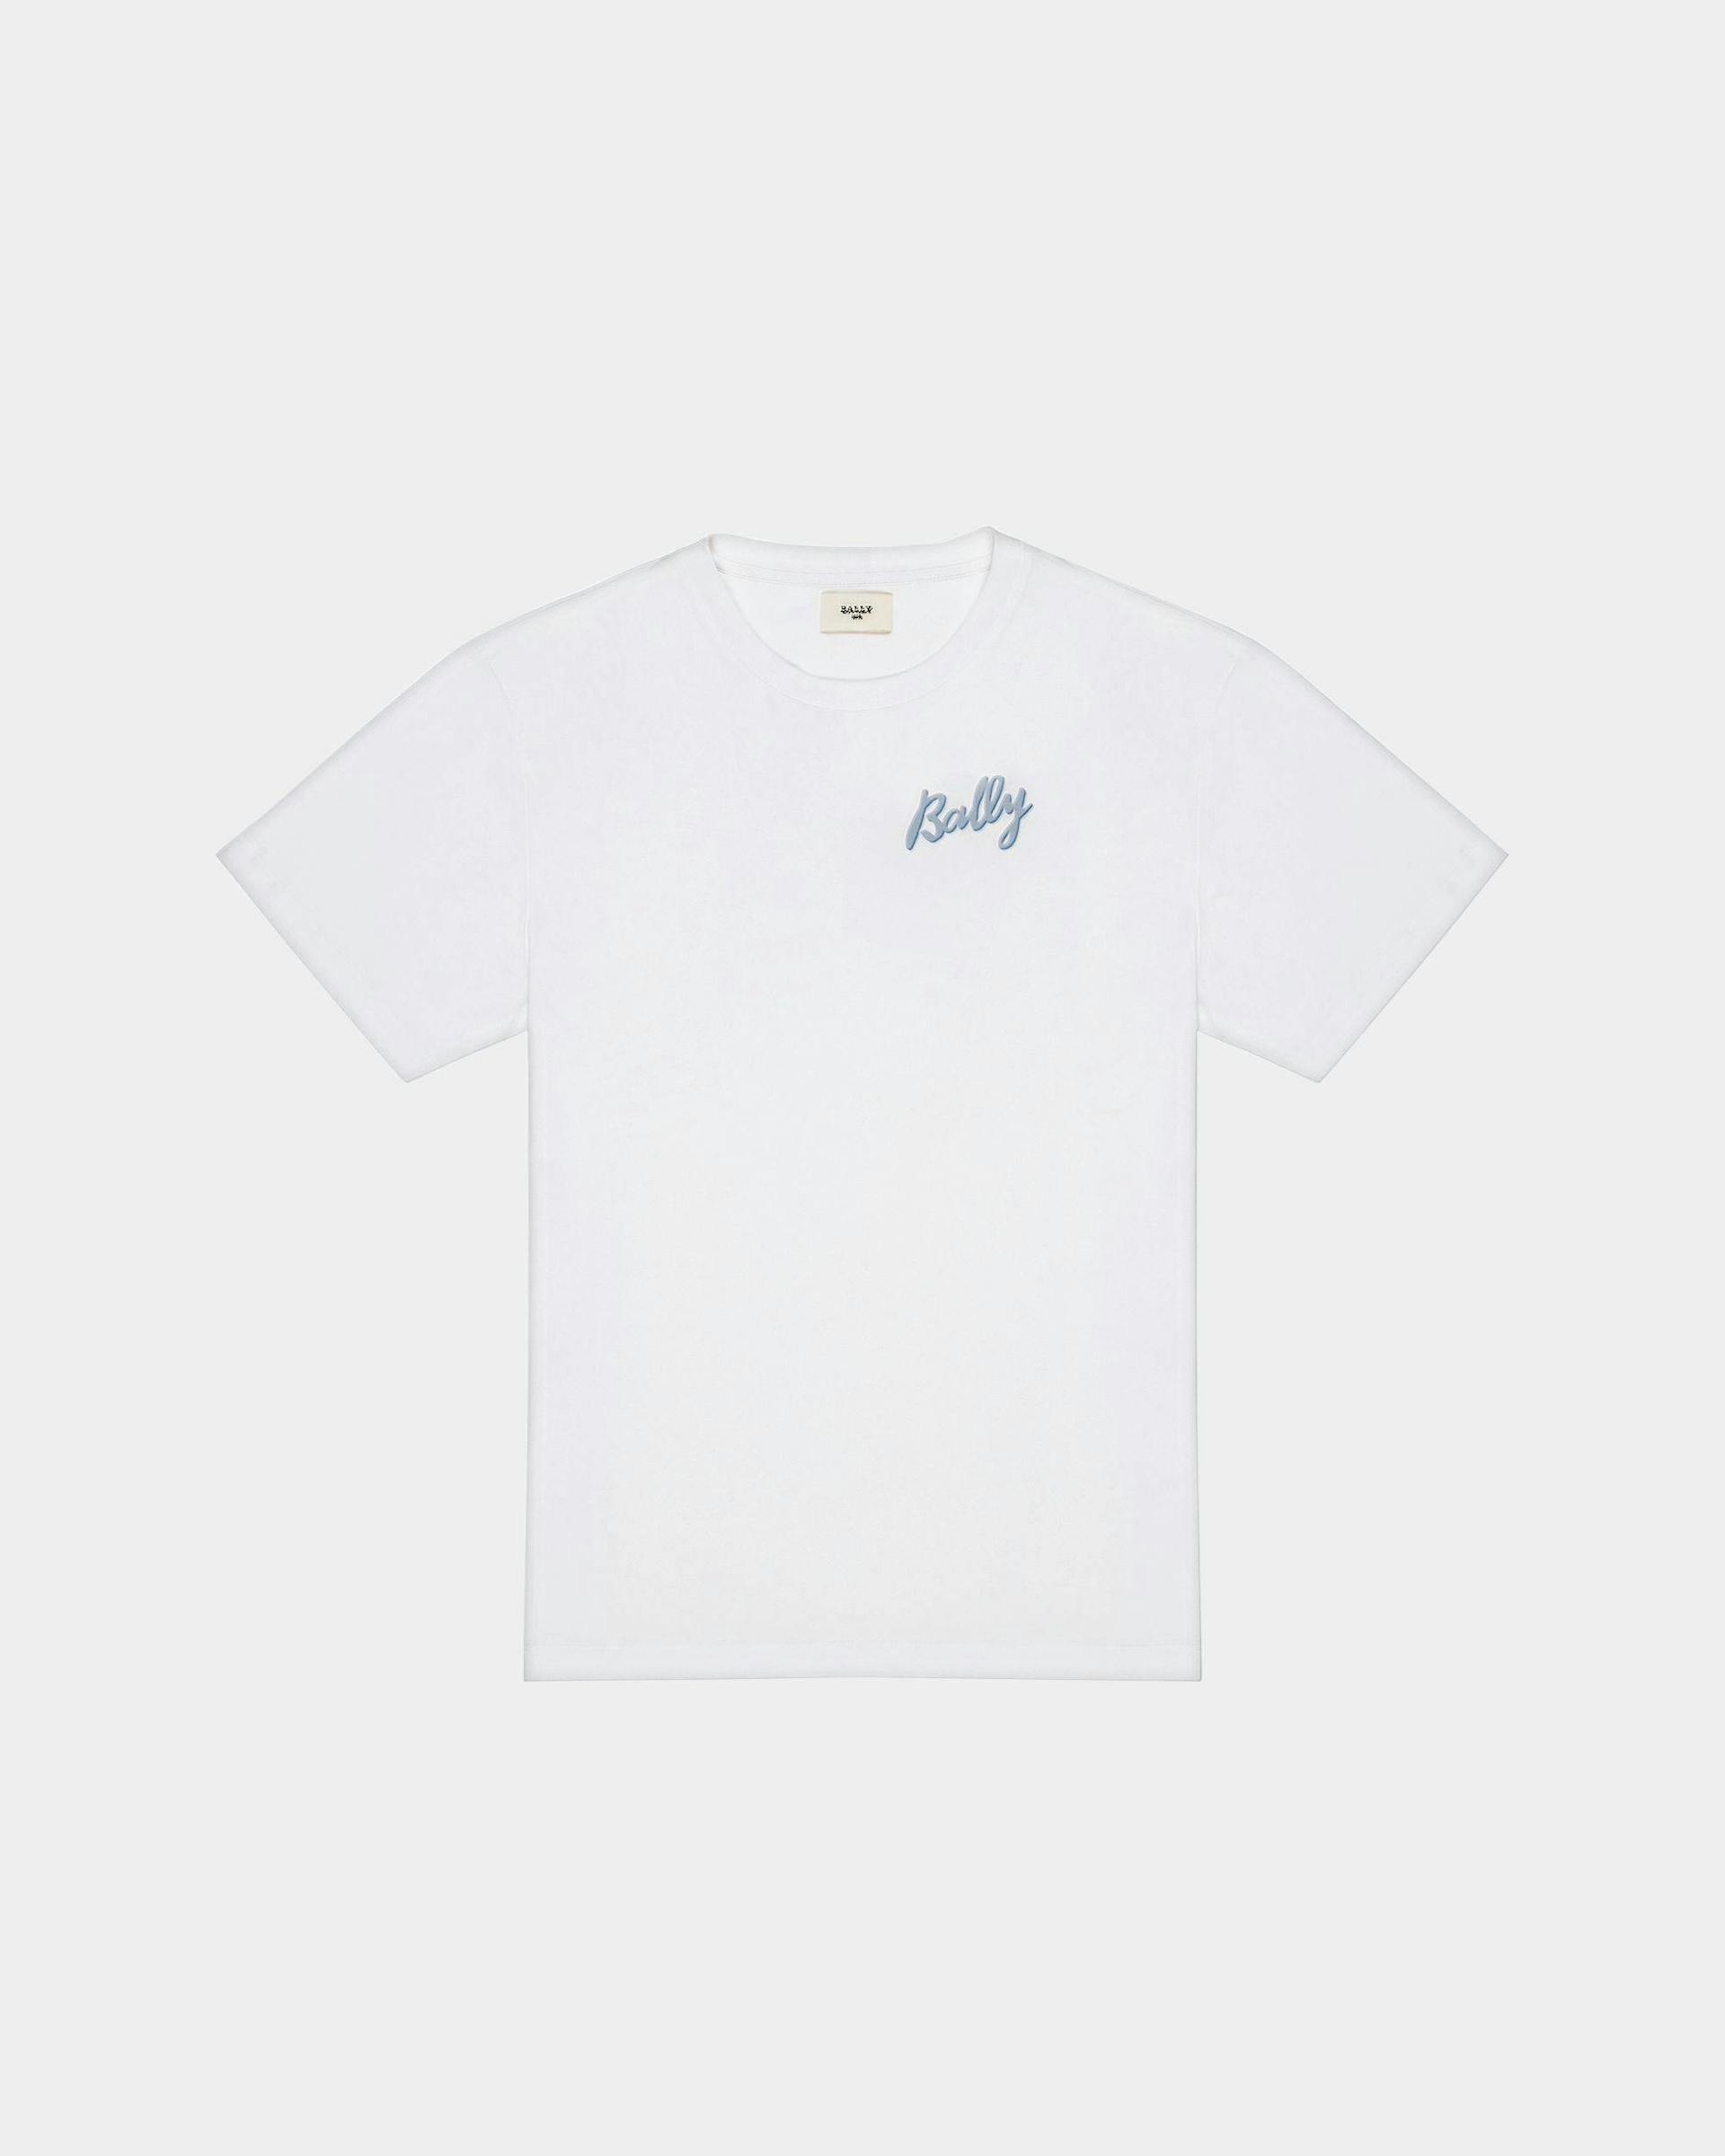 T-Shirt Aus Baumwolle In Weiß Und Hellblau - Herren - Bally - 01